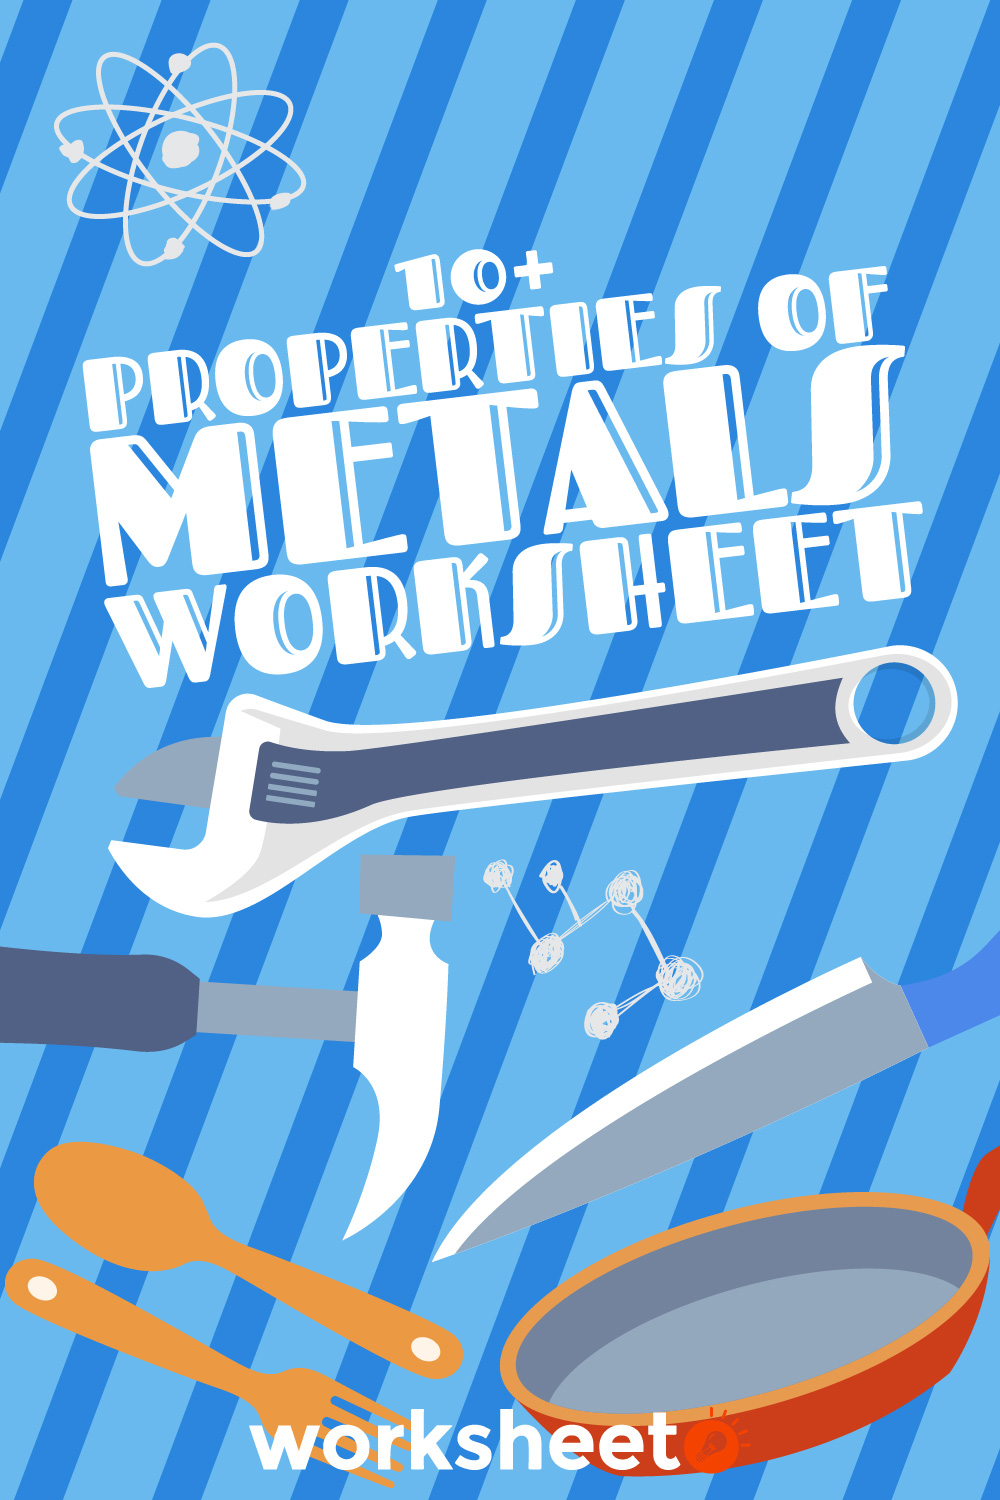 Properties of Metals Worksheet